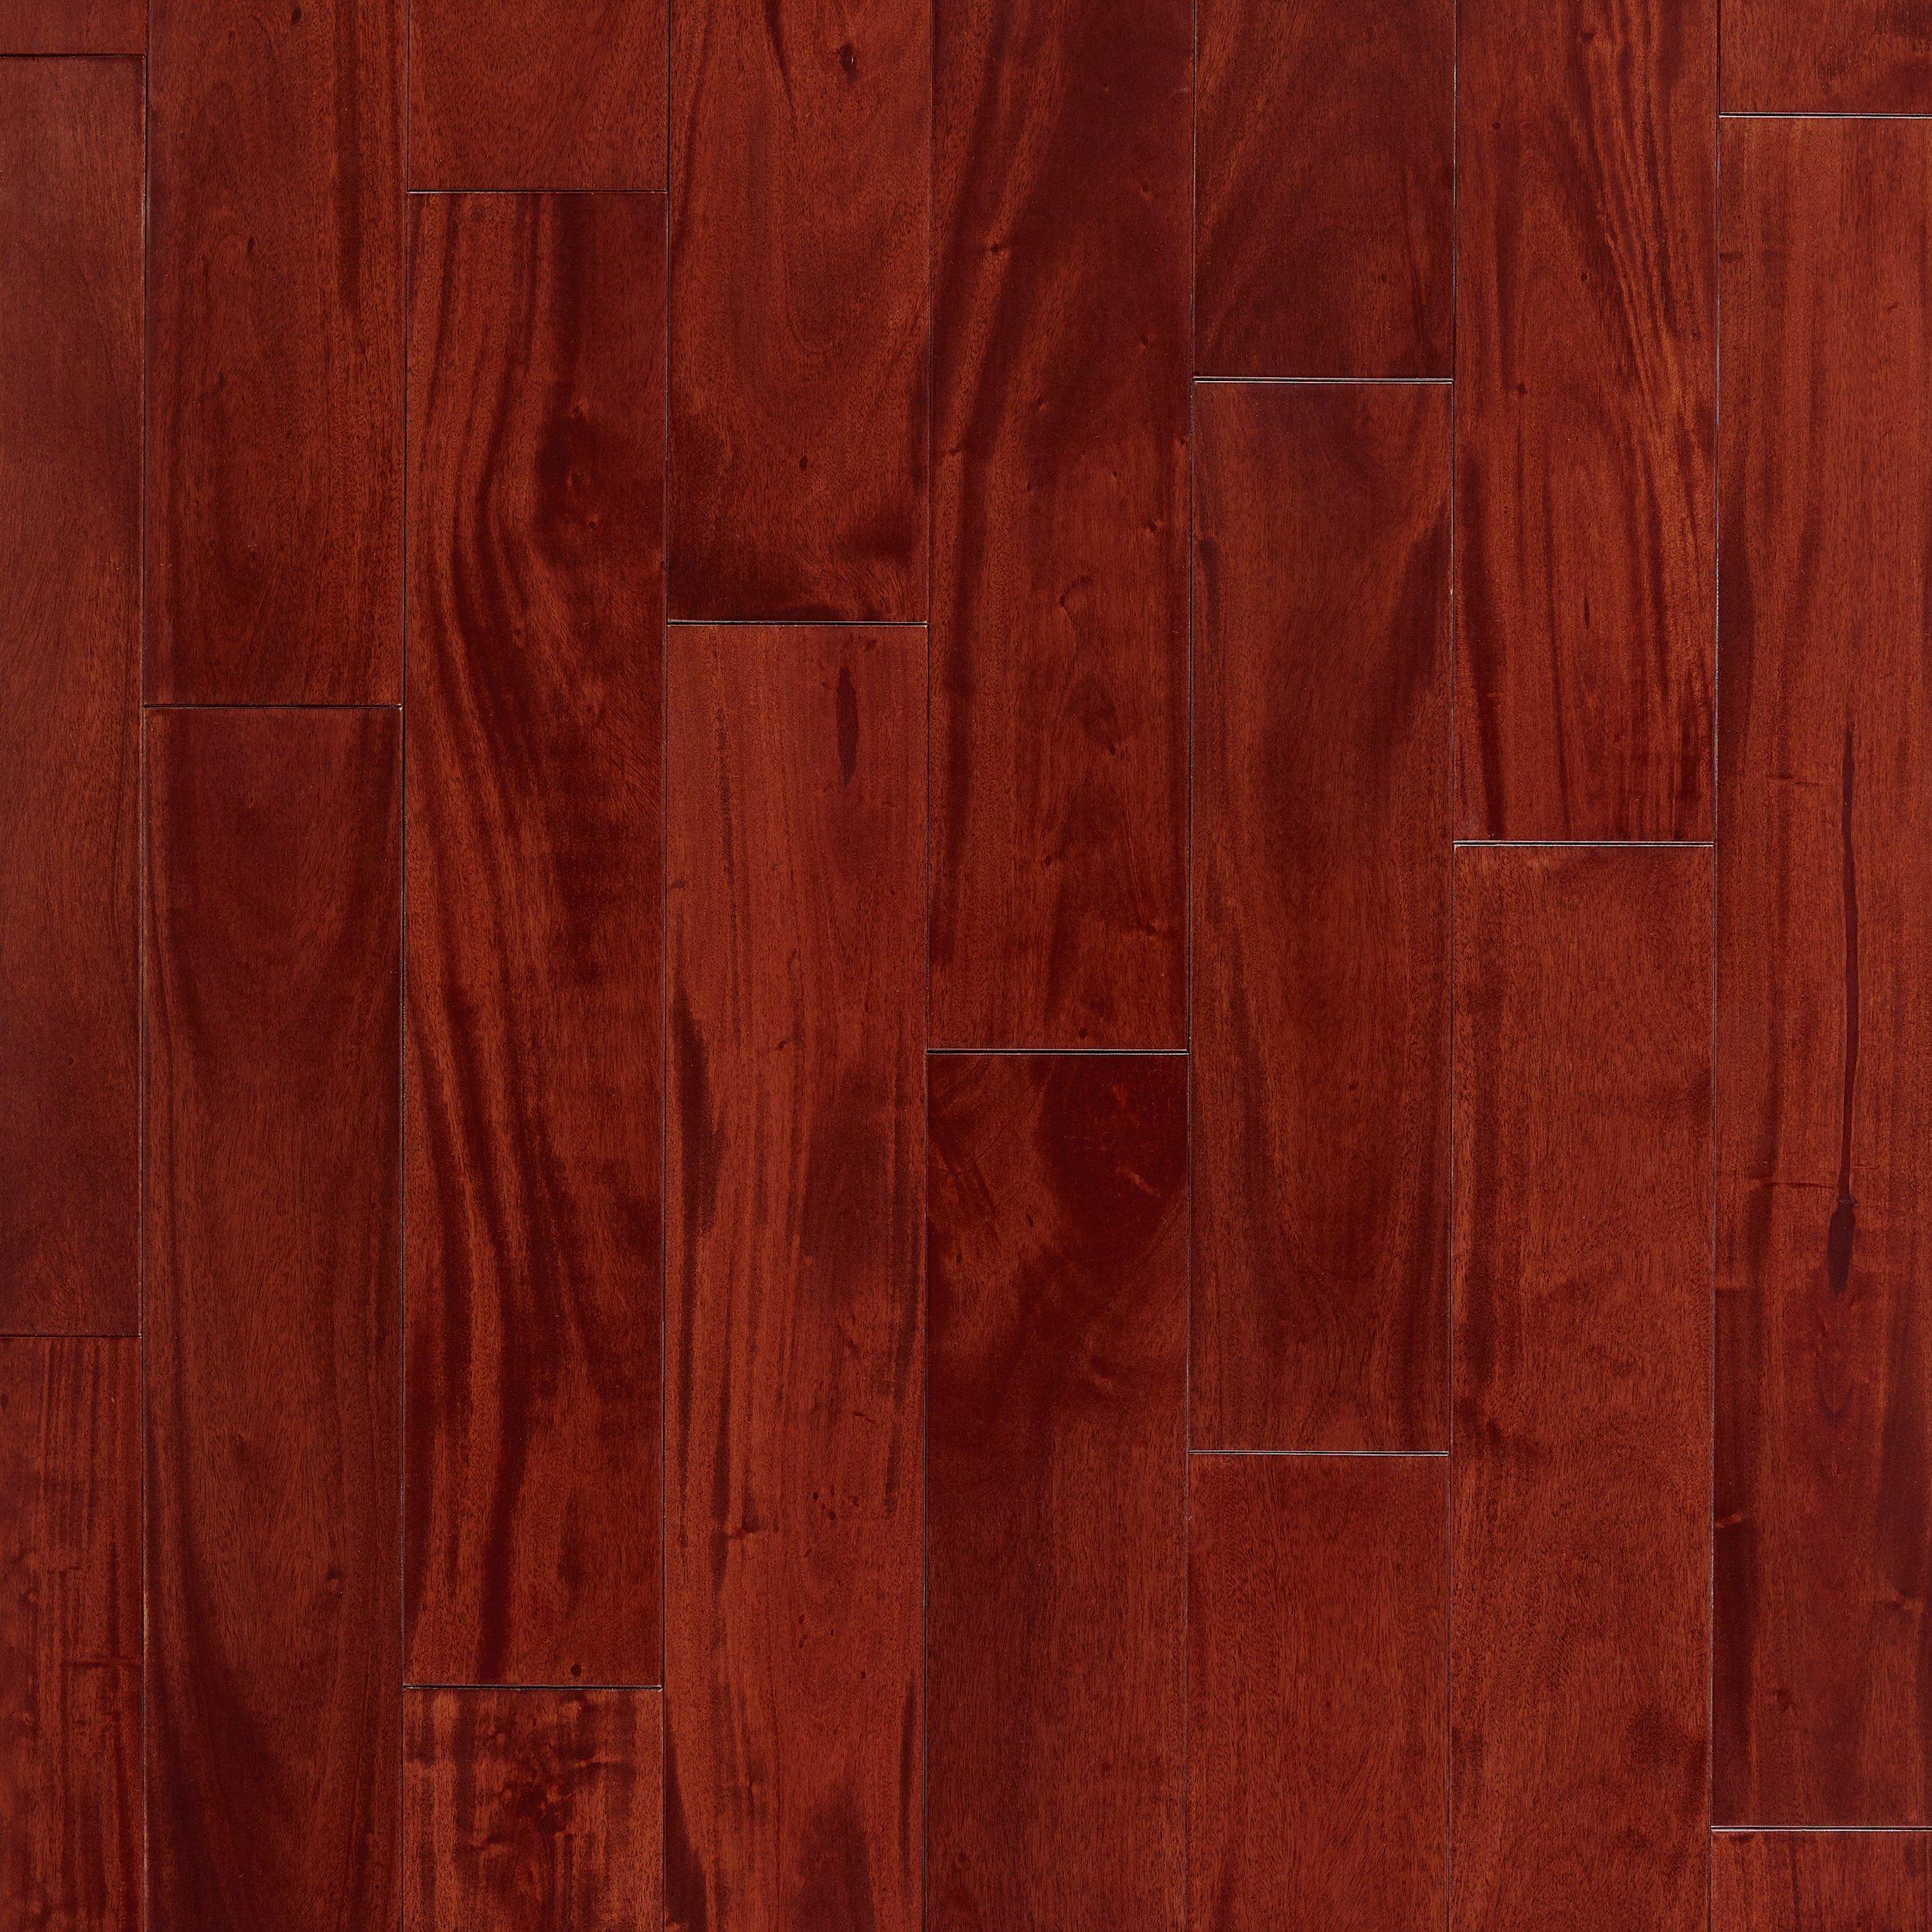 Mahogany Smooth Solid Hardwood Floor, Red Mahogany Hardwood Flooring